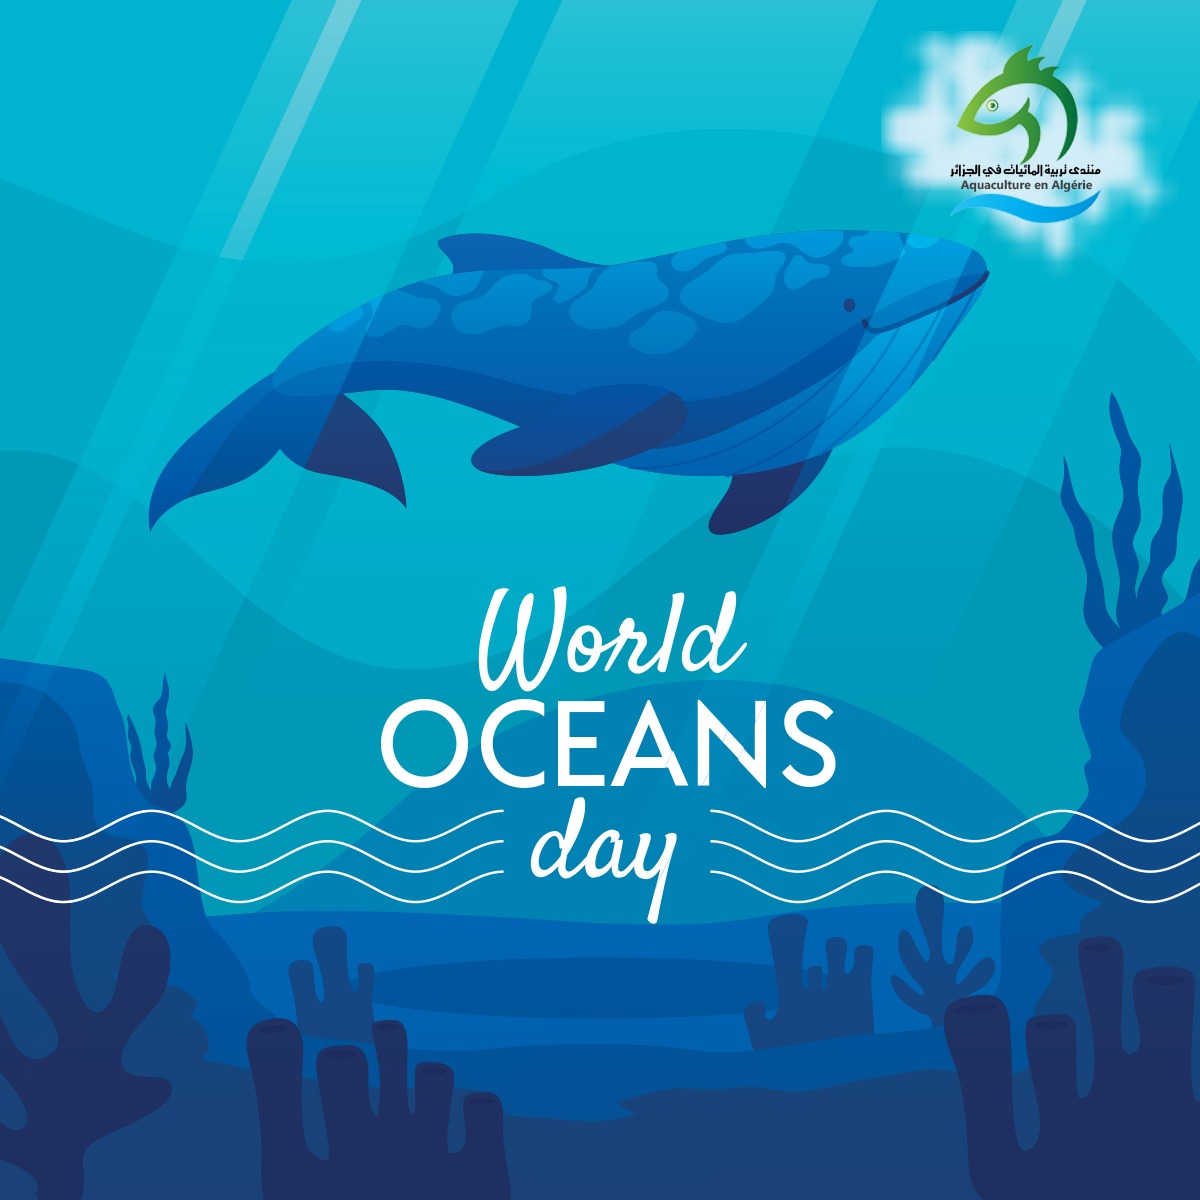 🌊🐟 احتفالًا باليوم العالمي للمحيط، نشجعكم على حماية المحيطات ودعم الاستزراع السمكي المستدام. معًا، يمكننا بناء مستقبل مستدام للأجيال القادمة والاستمتاع بفوائد المحيطات. 🌍💙 #WorldOceansDay #SustainableAquaculture #ProtectOurOceans